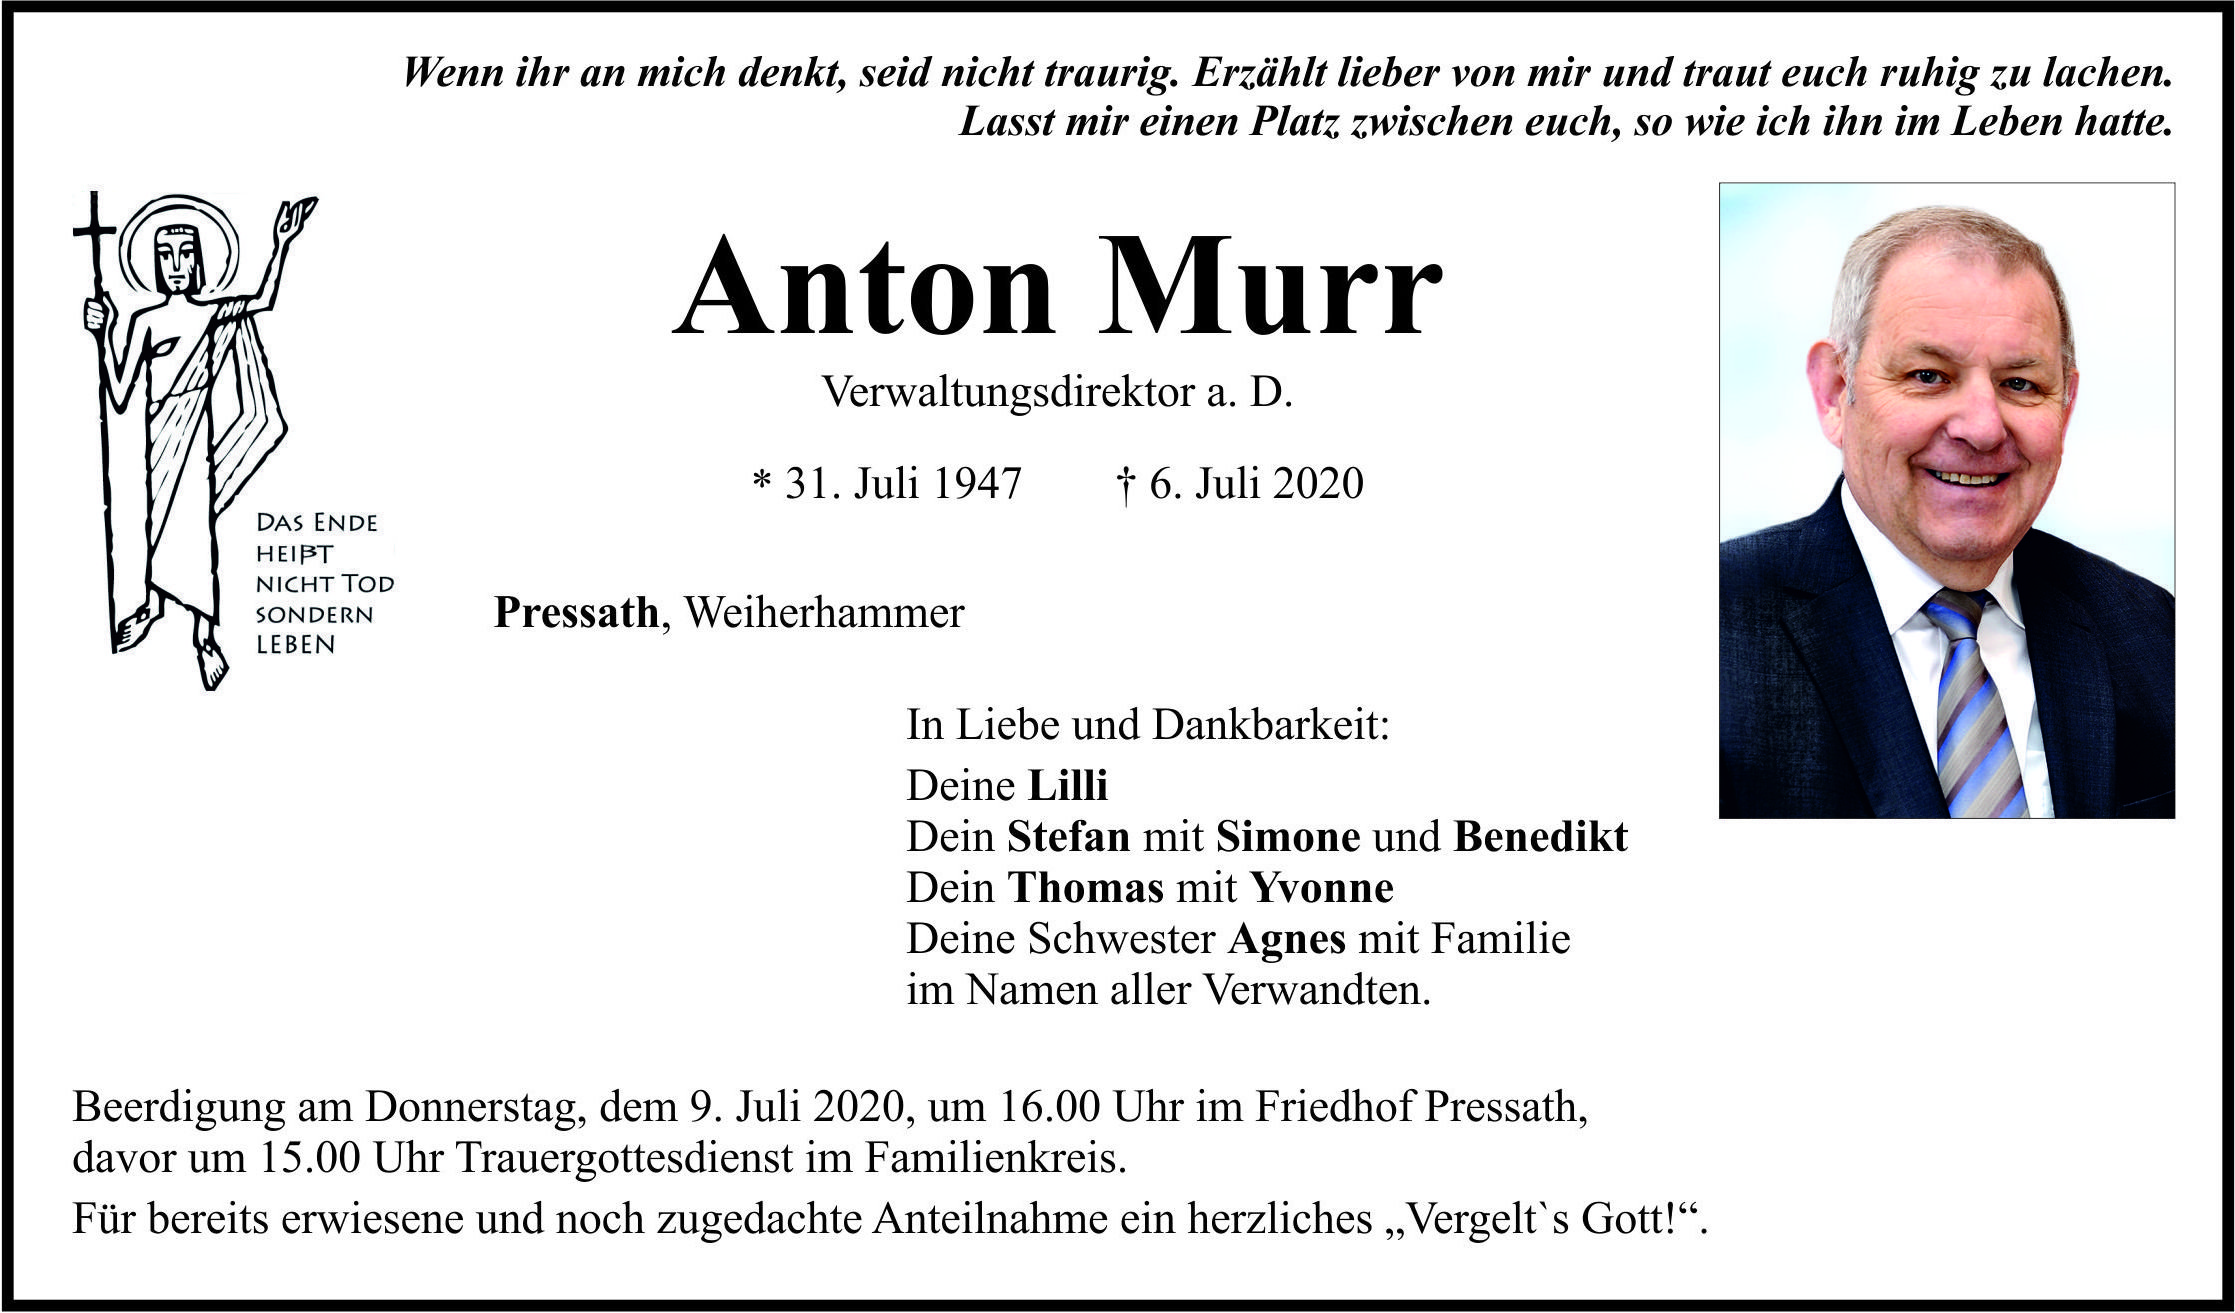 Traueranzeige Anton Murr, Pressath Weiherhammer